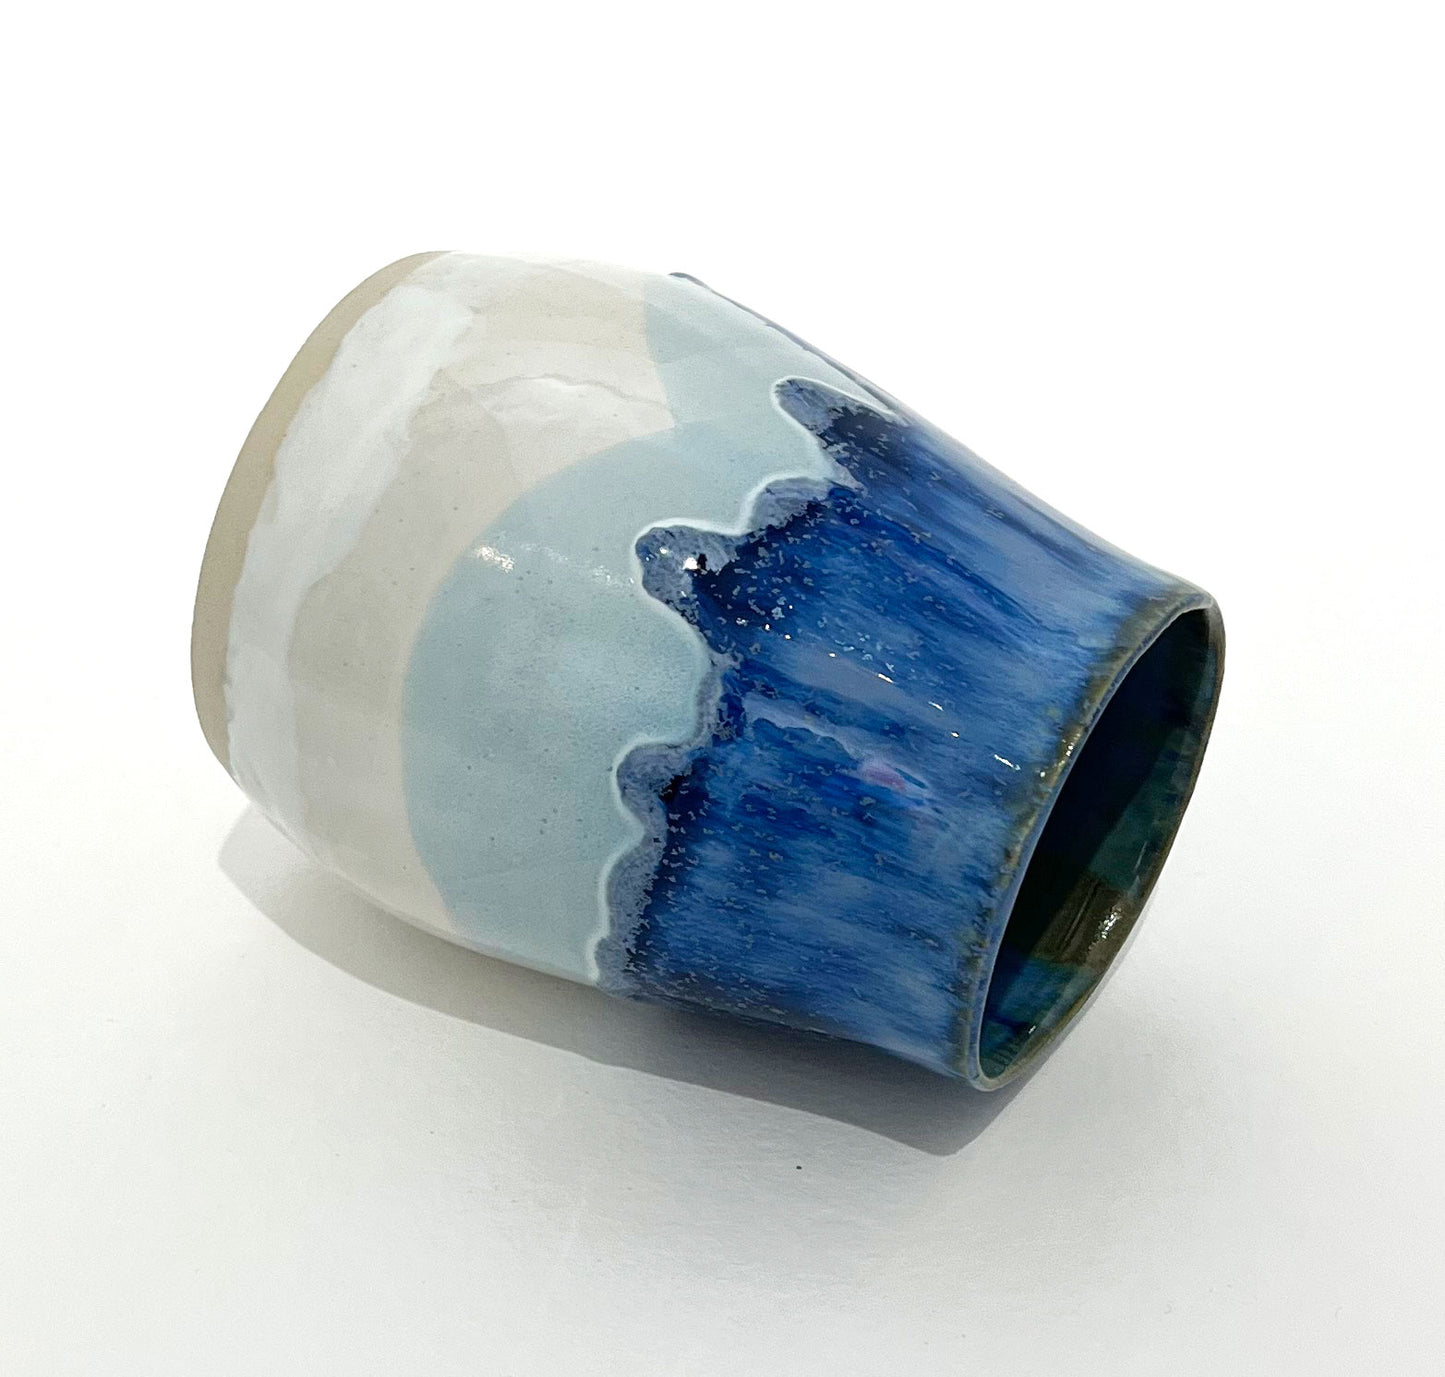 Vase i blå nuancer